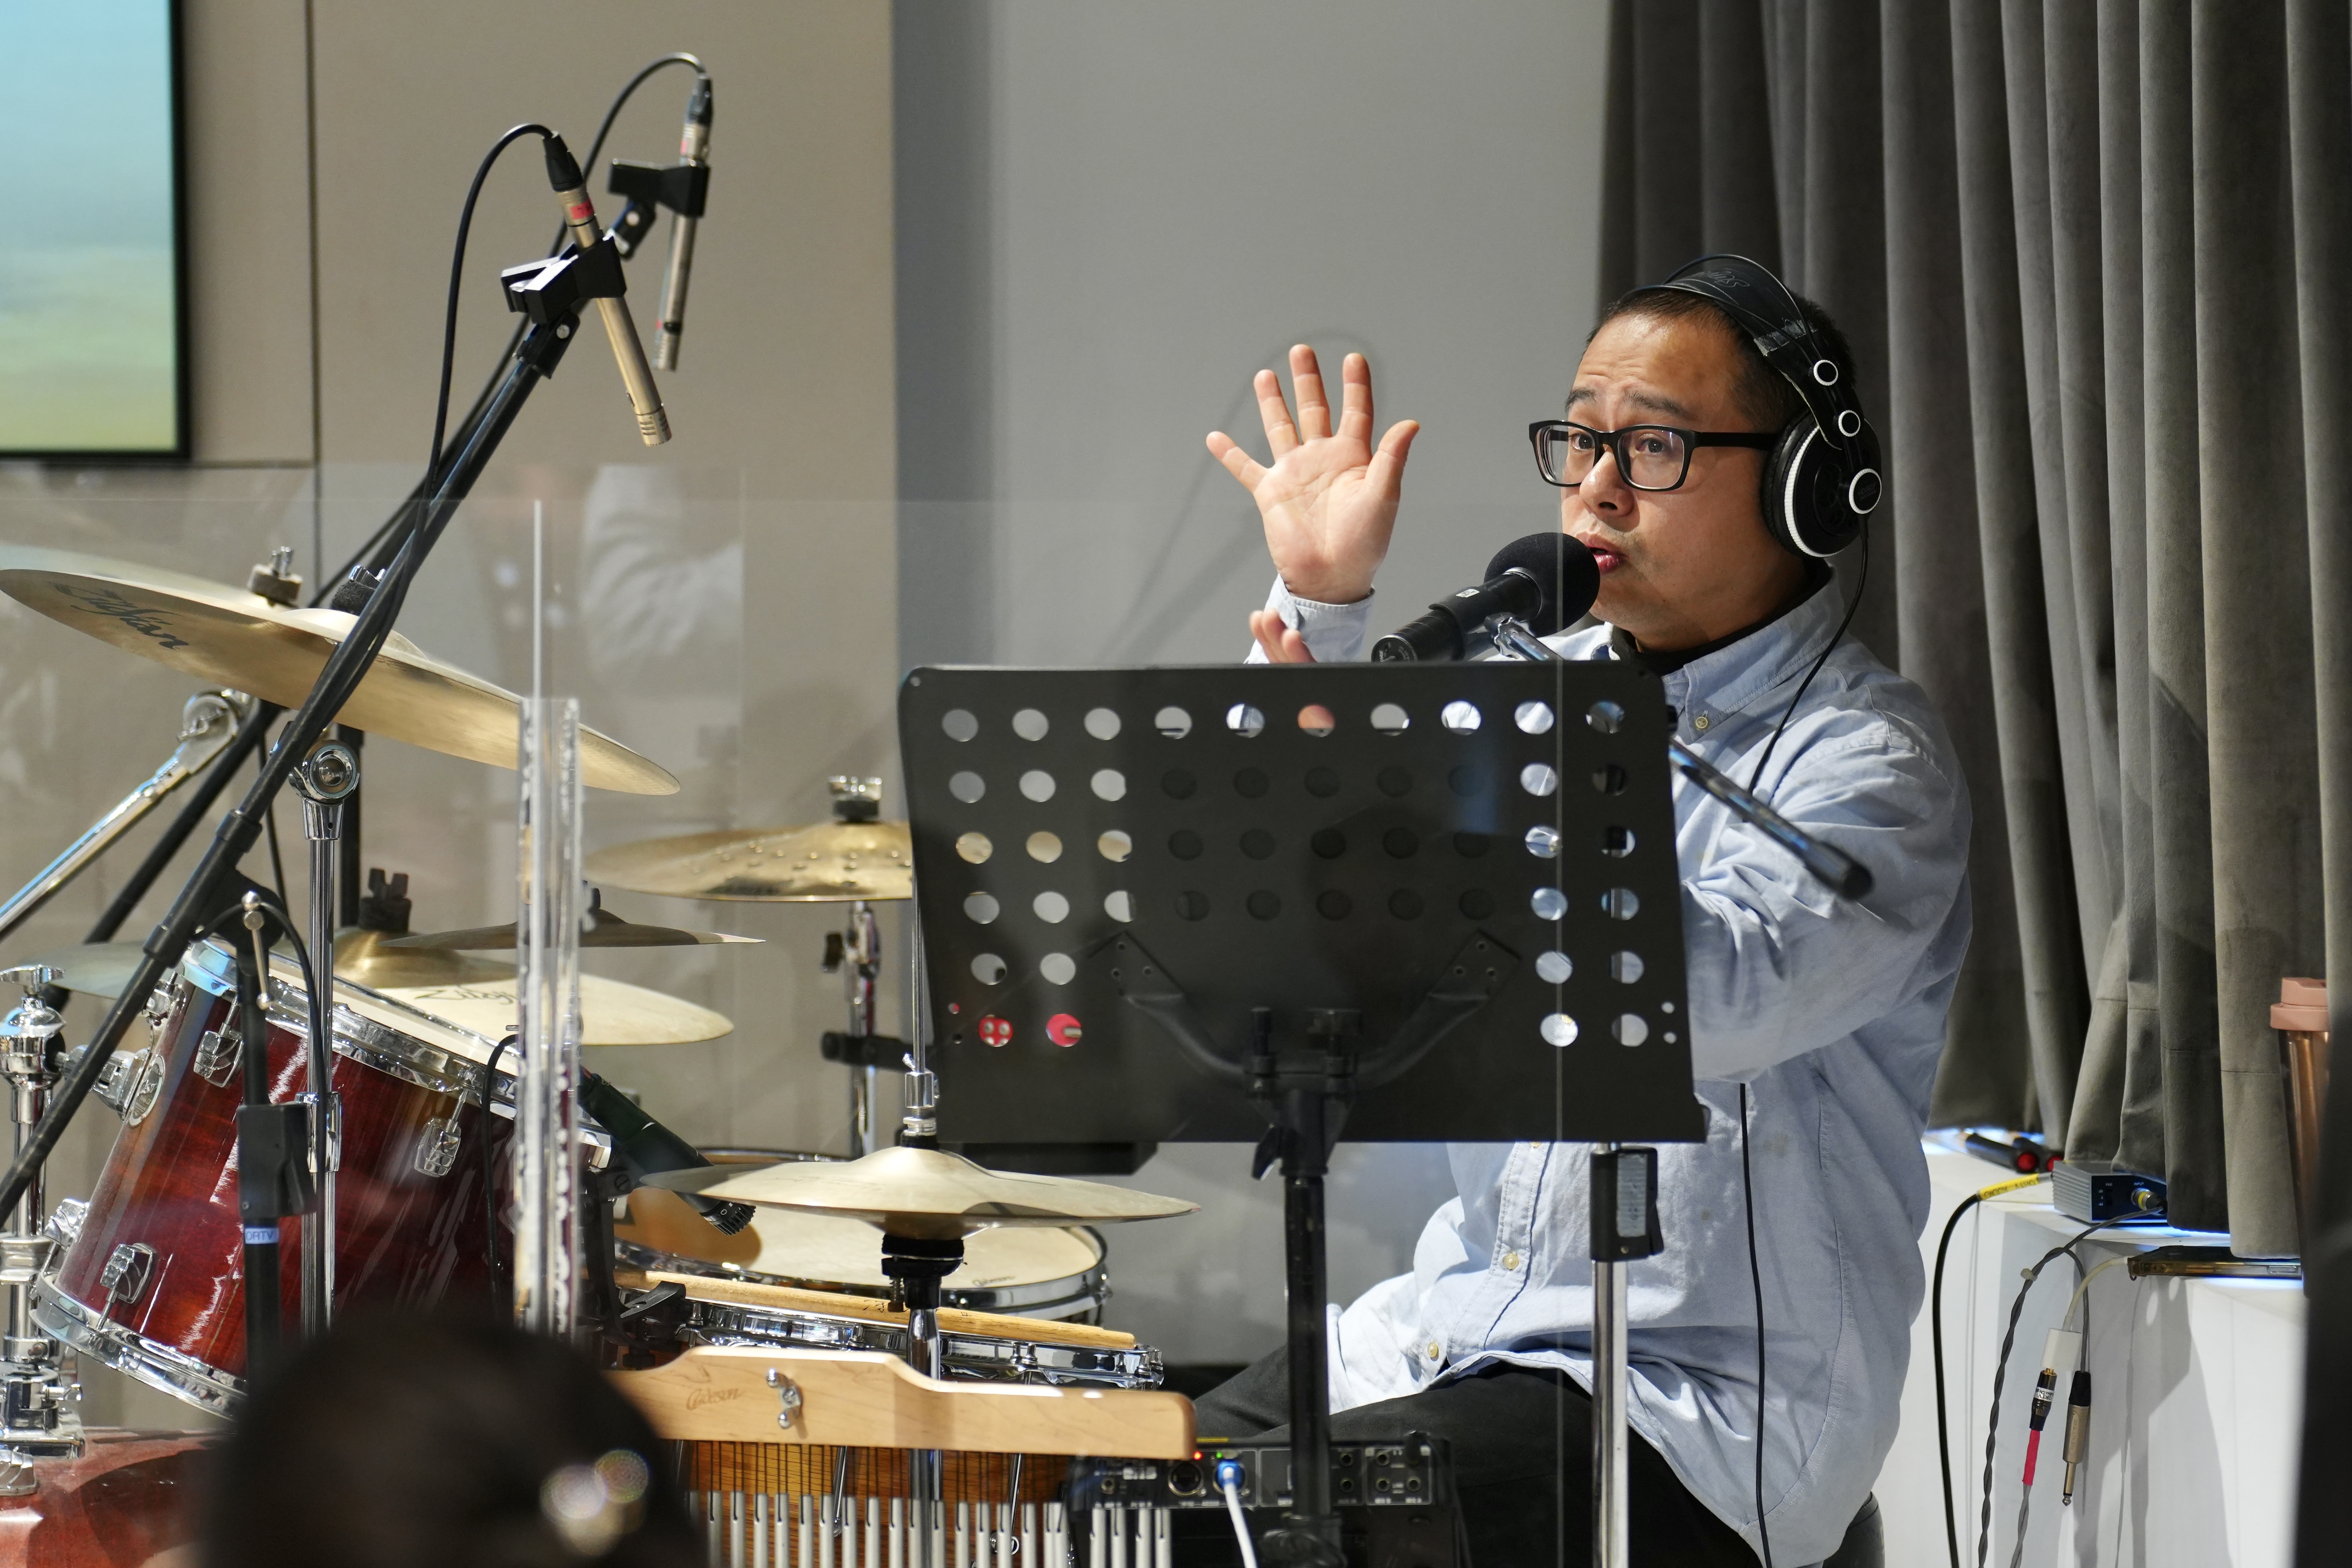 活躍於音樂業界的鼓手郭家昇老師現場親授歌手與樂團配合的要訣